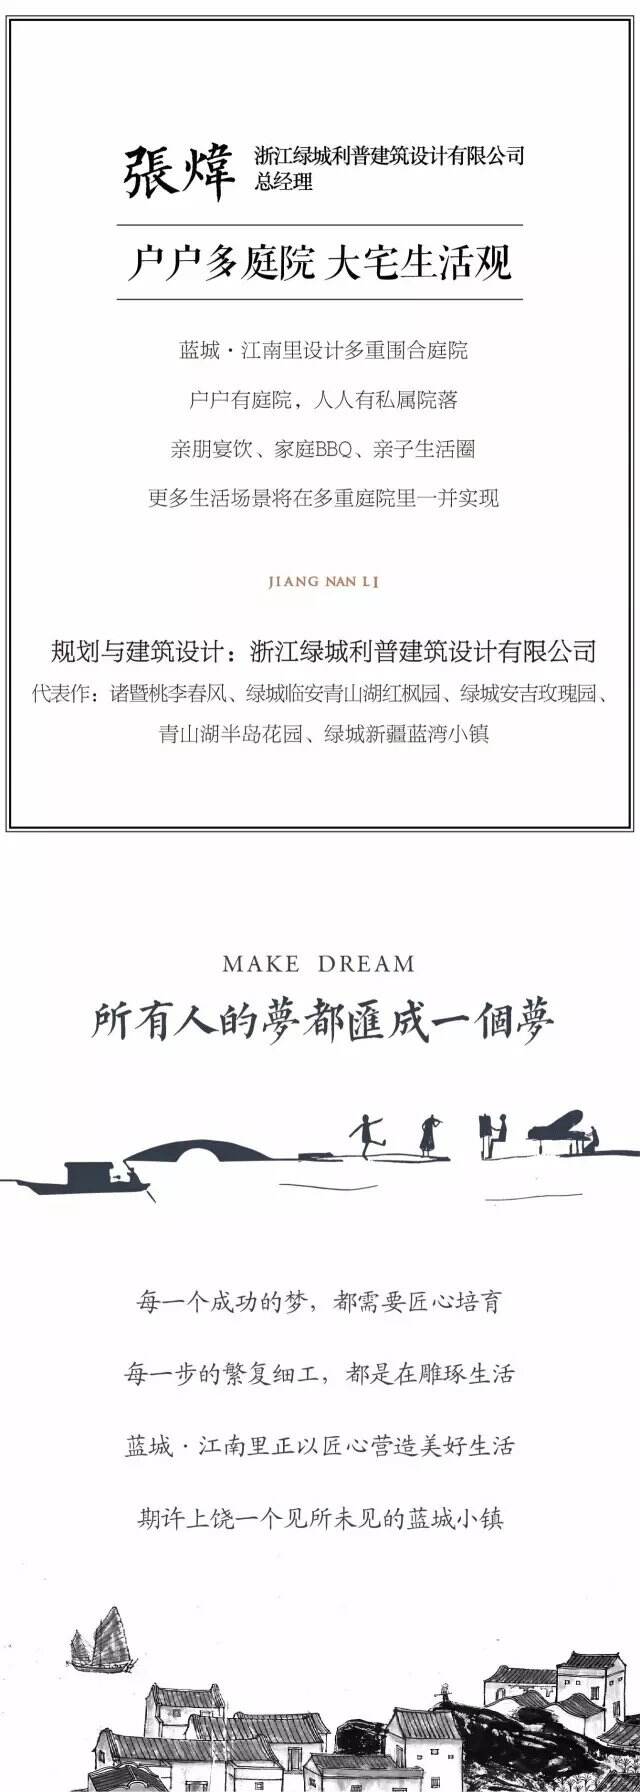 「小镇造梦记」《造梦师手里的小镇秘籍》，蓝城江南里官方平台2017年6月20日发布